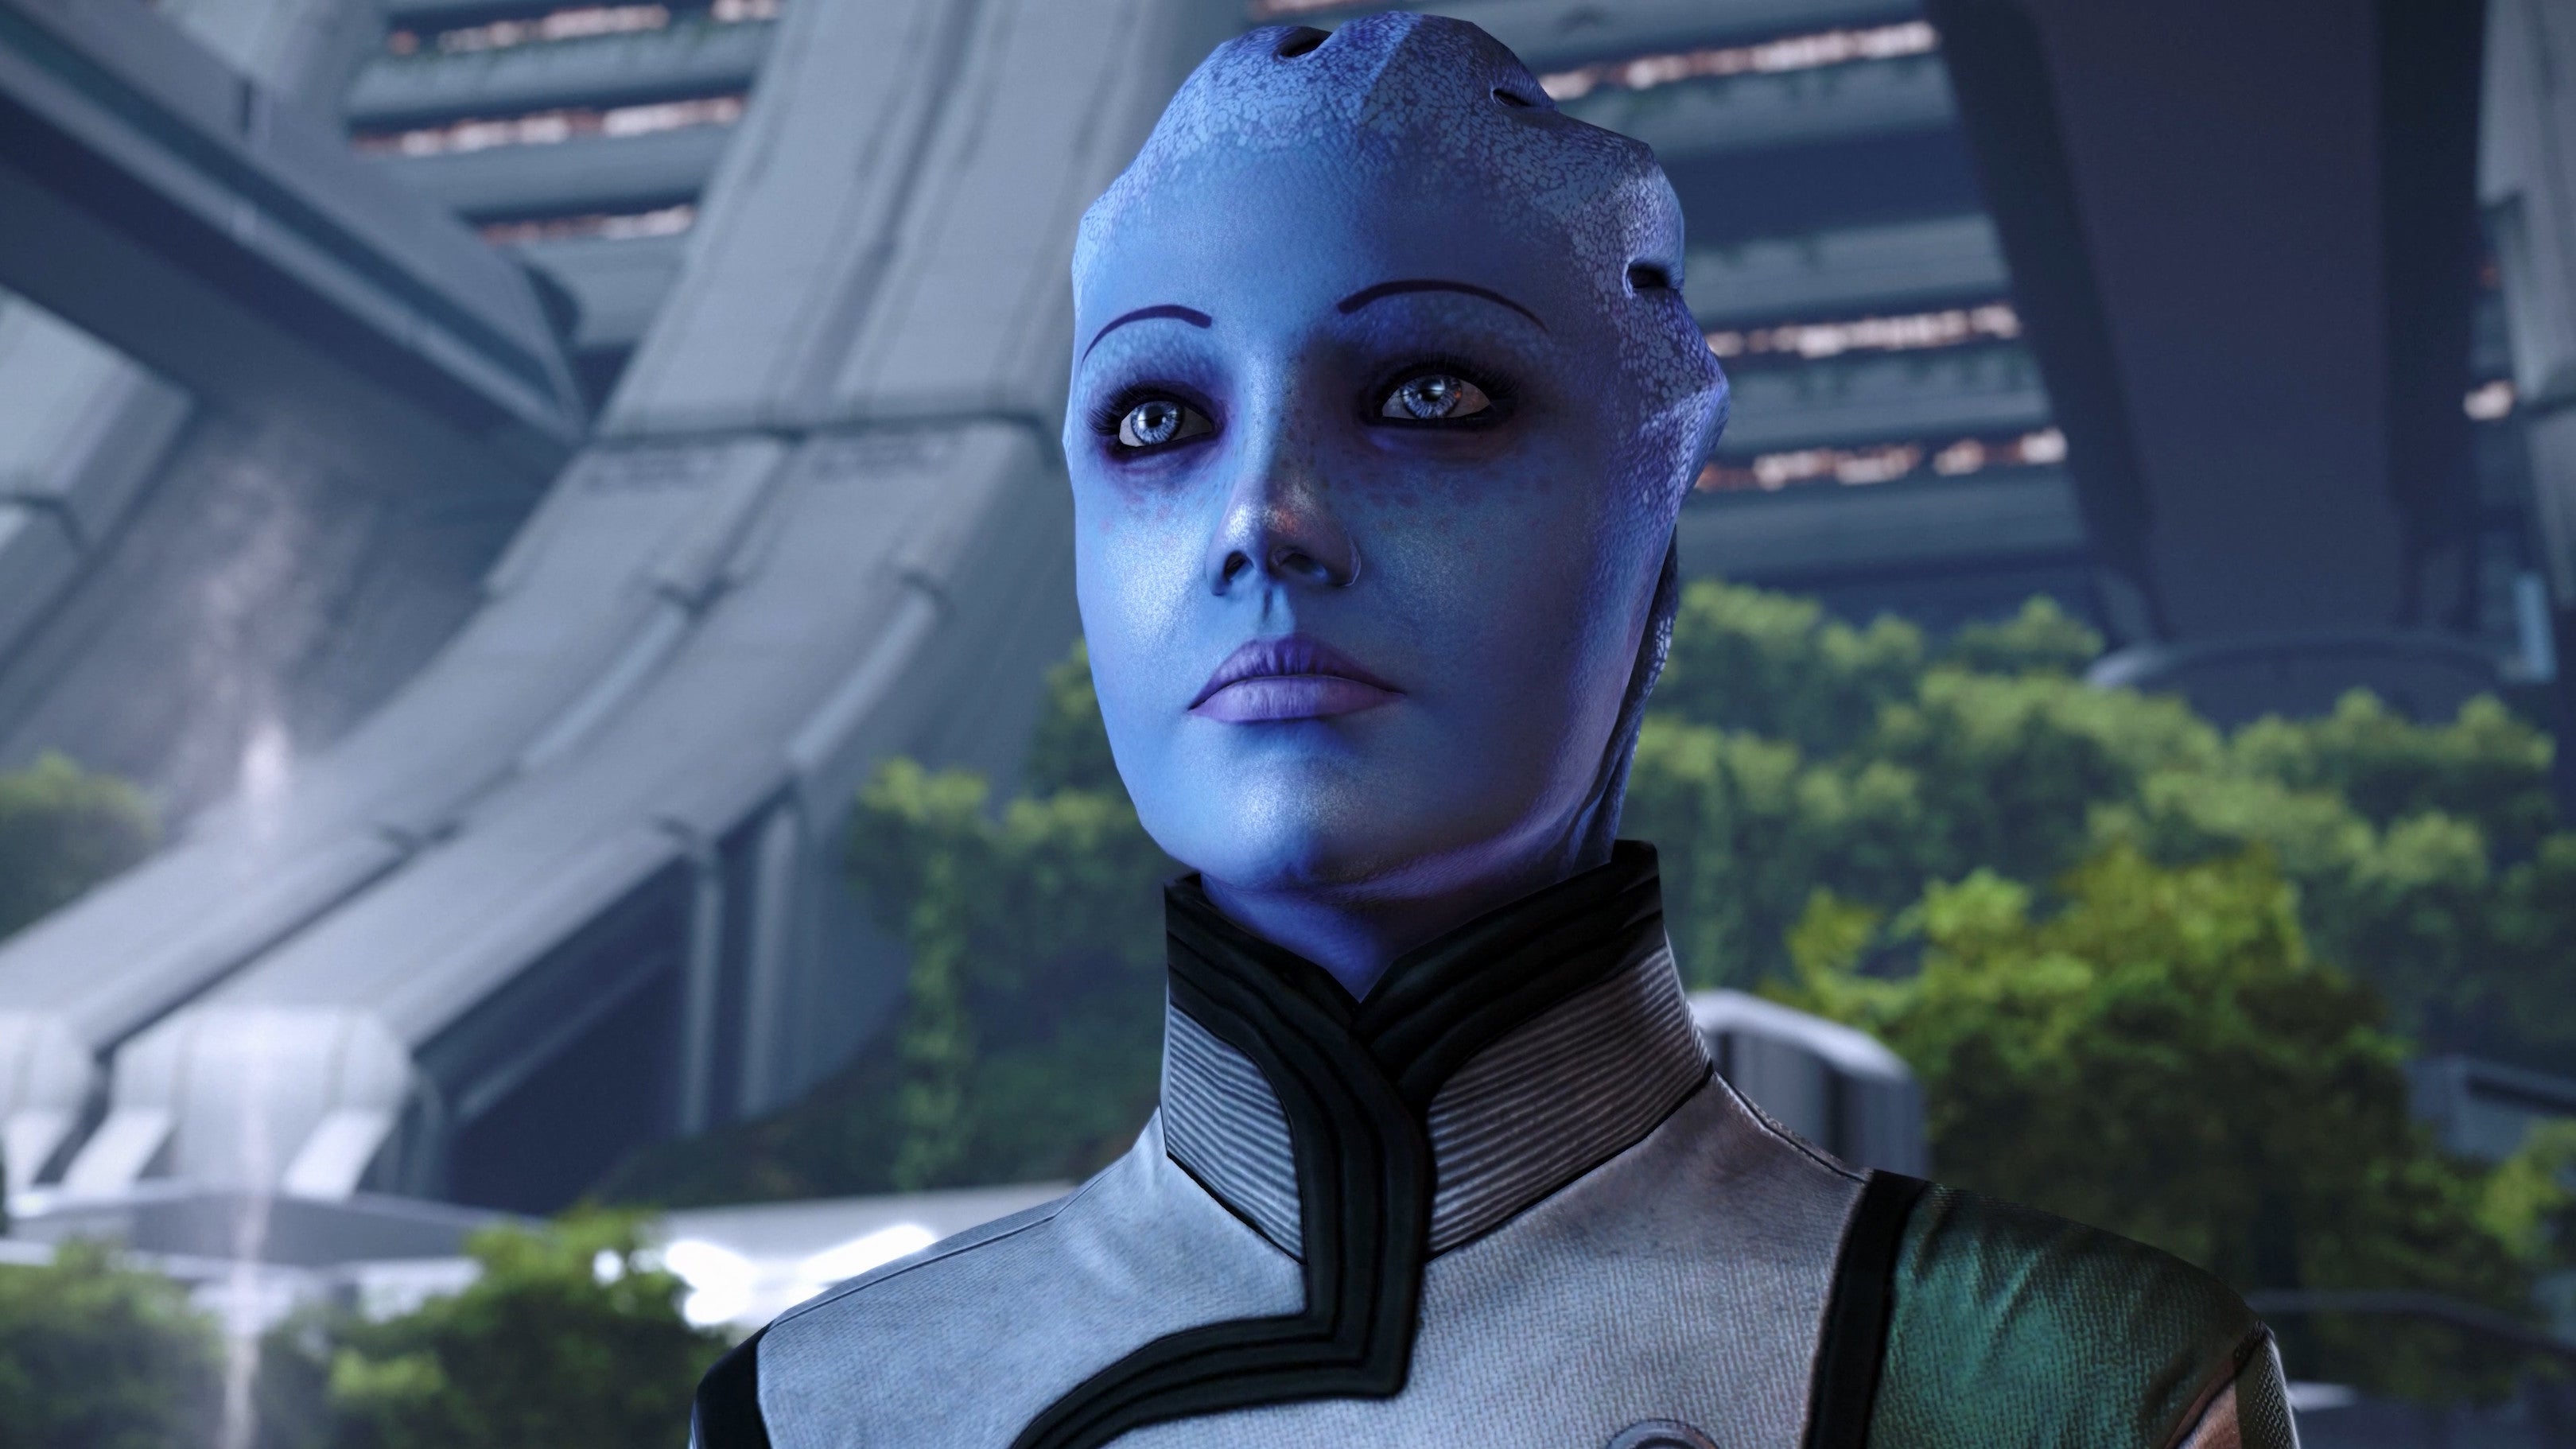 Liara in a Mass Effect: Legendary Edition screenshot.